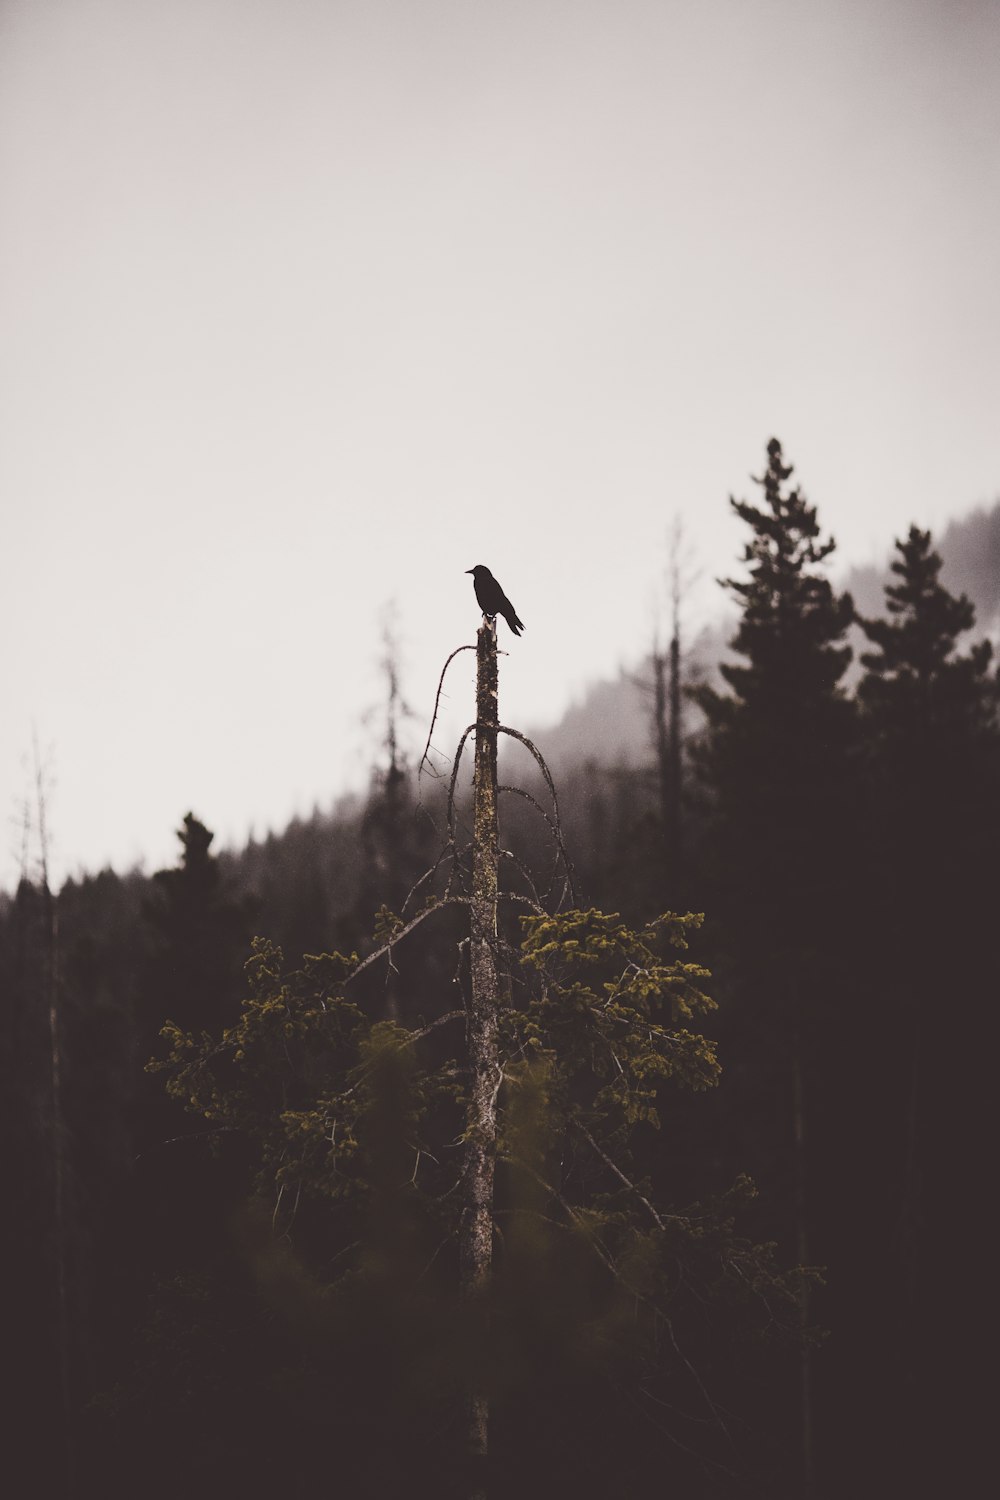 black bid perching on top of tree